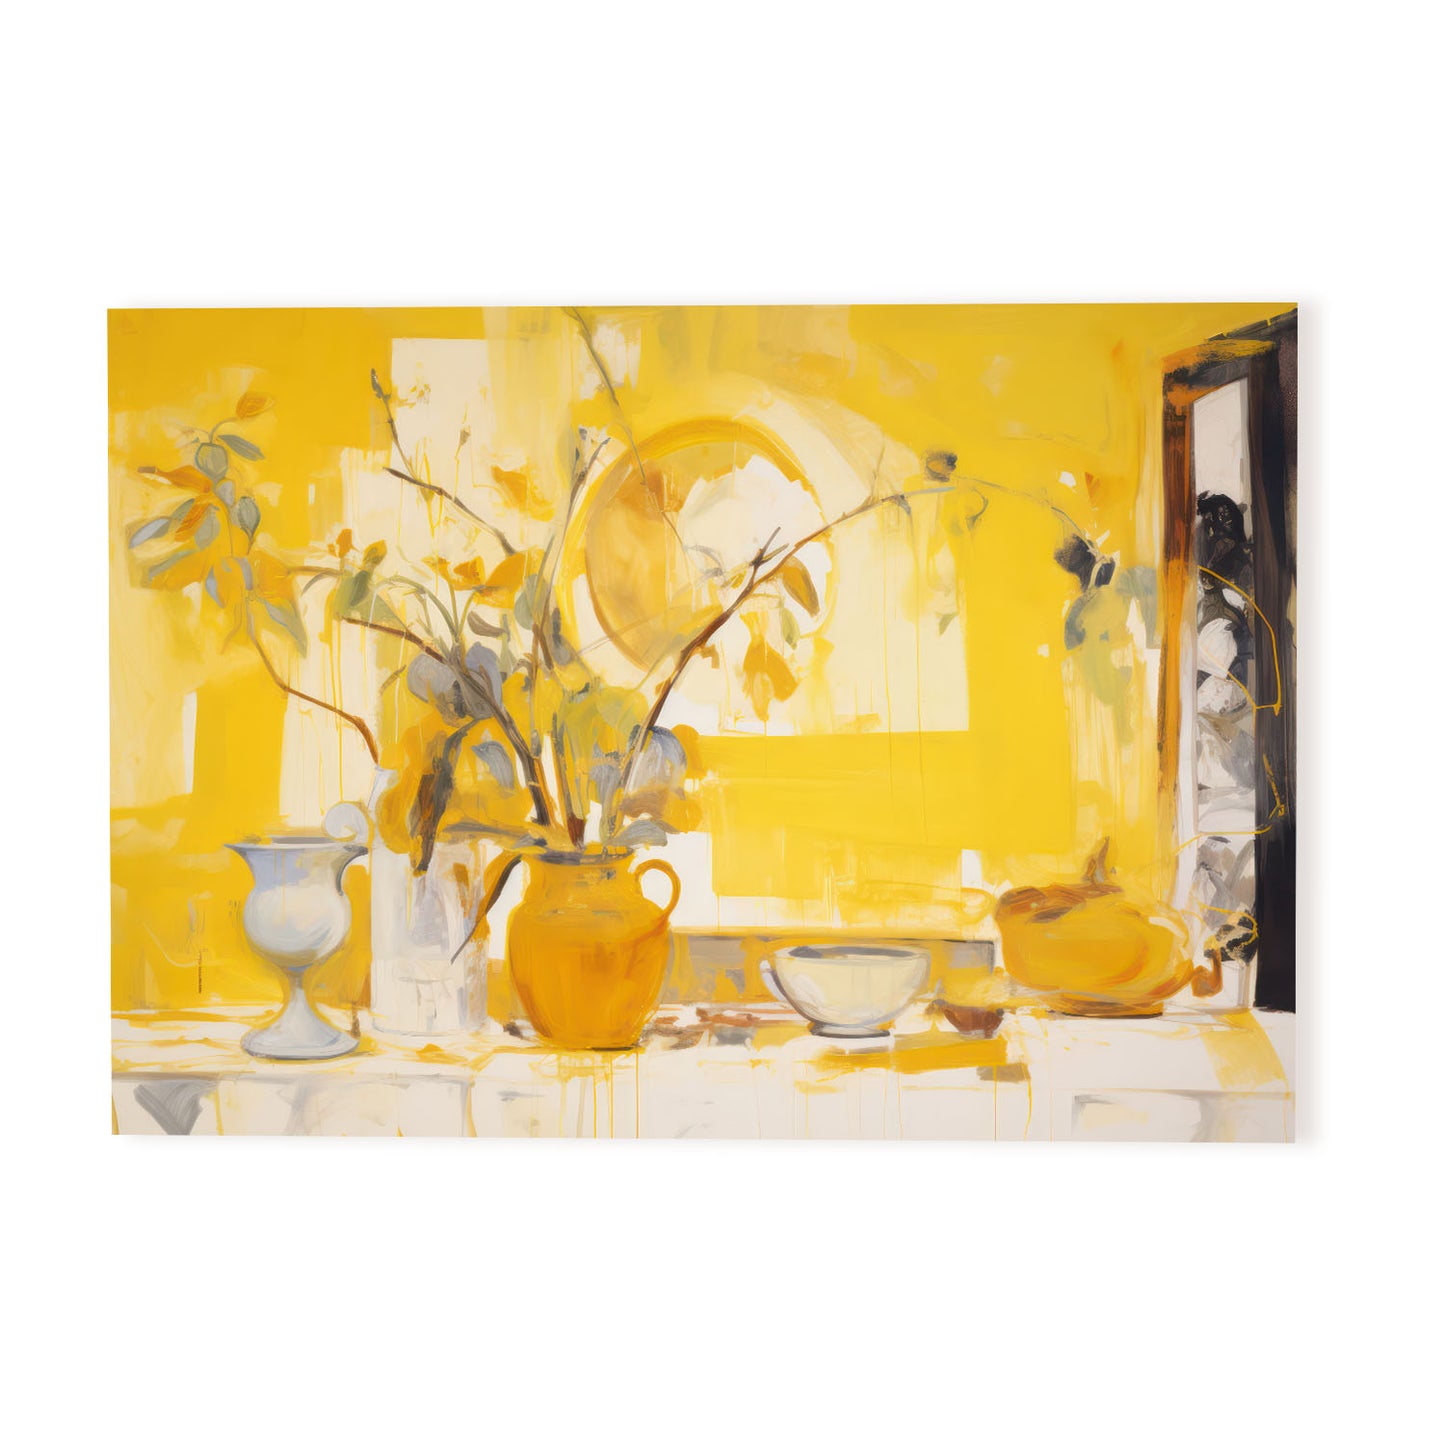 Nacnic Jarrón amarillo Lamina. En Amarillo interior ecléctico. Estampados decorativos estéticos para su sala de estar, dormitorio, hogar